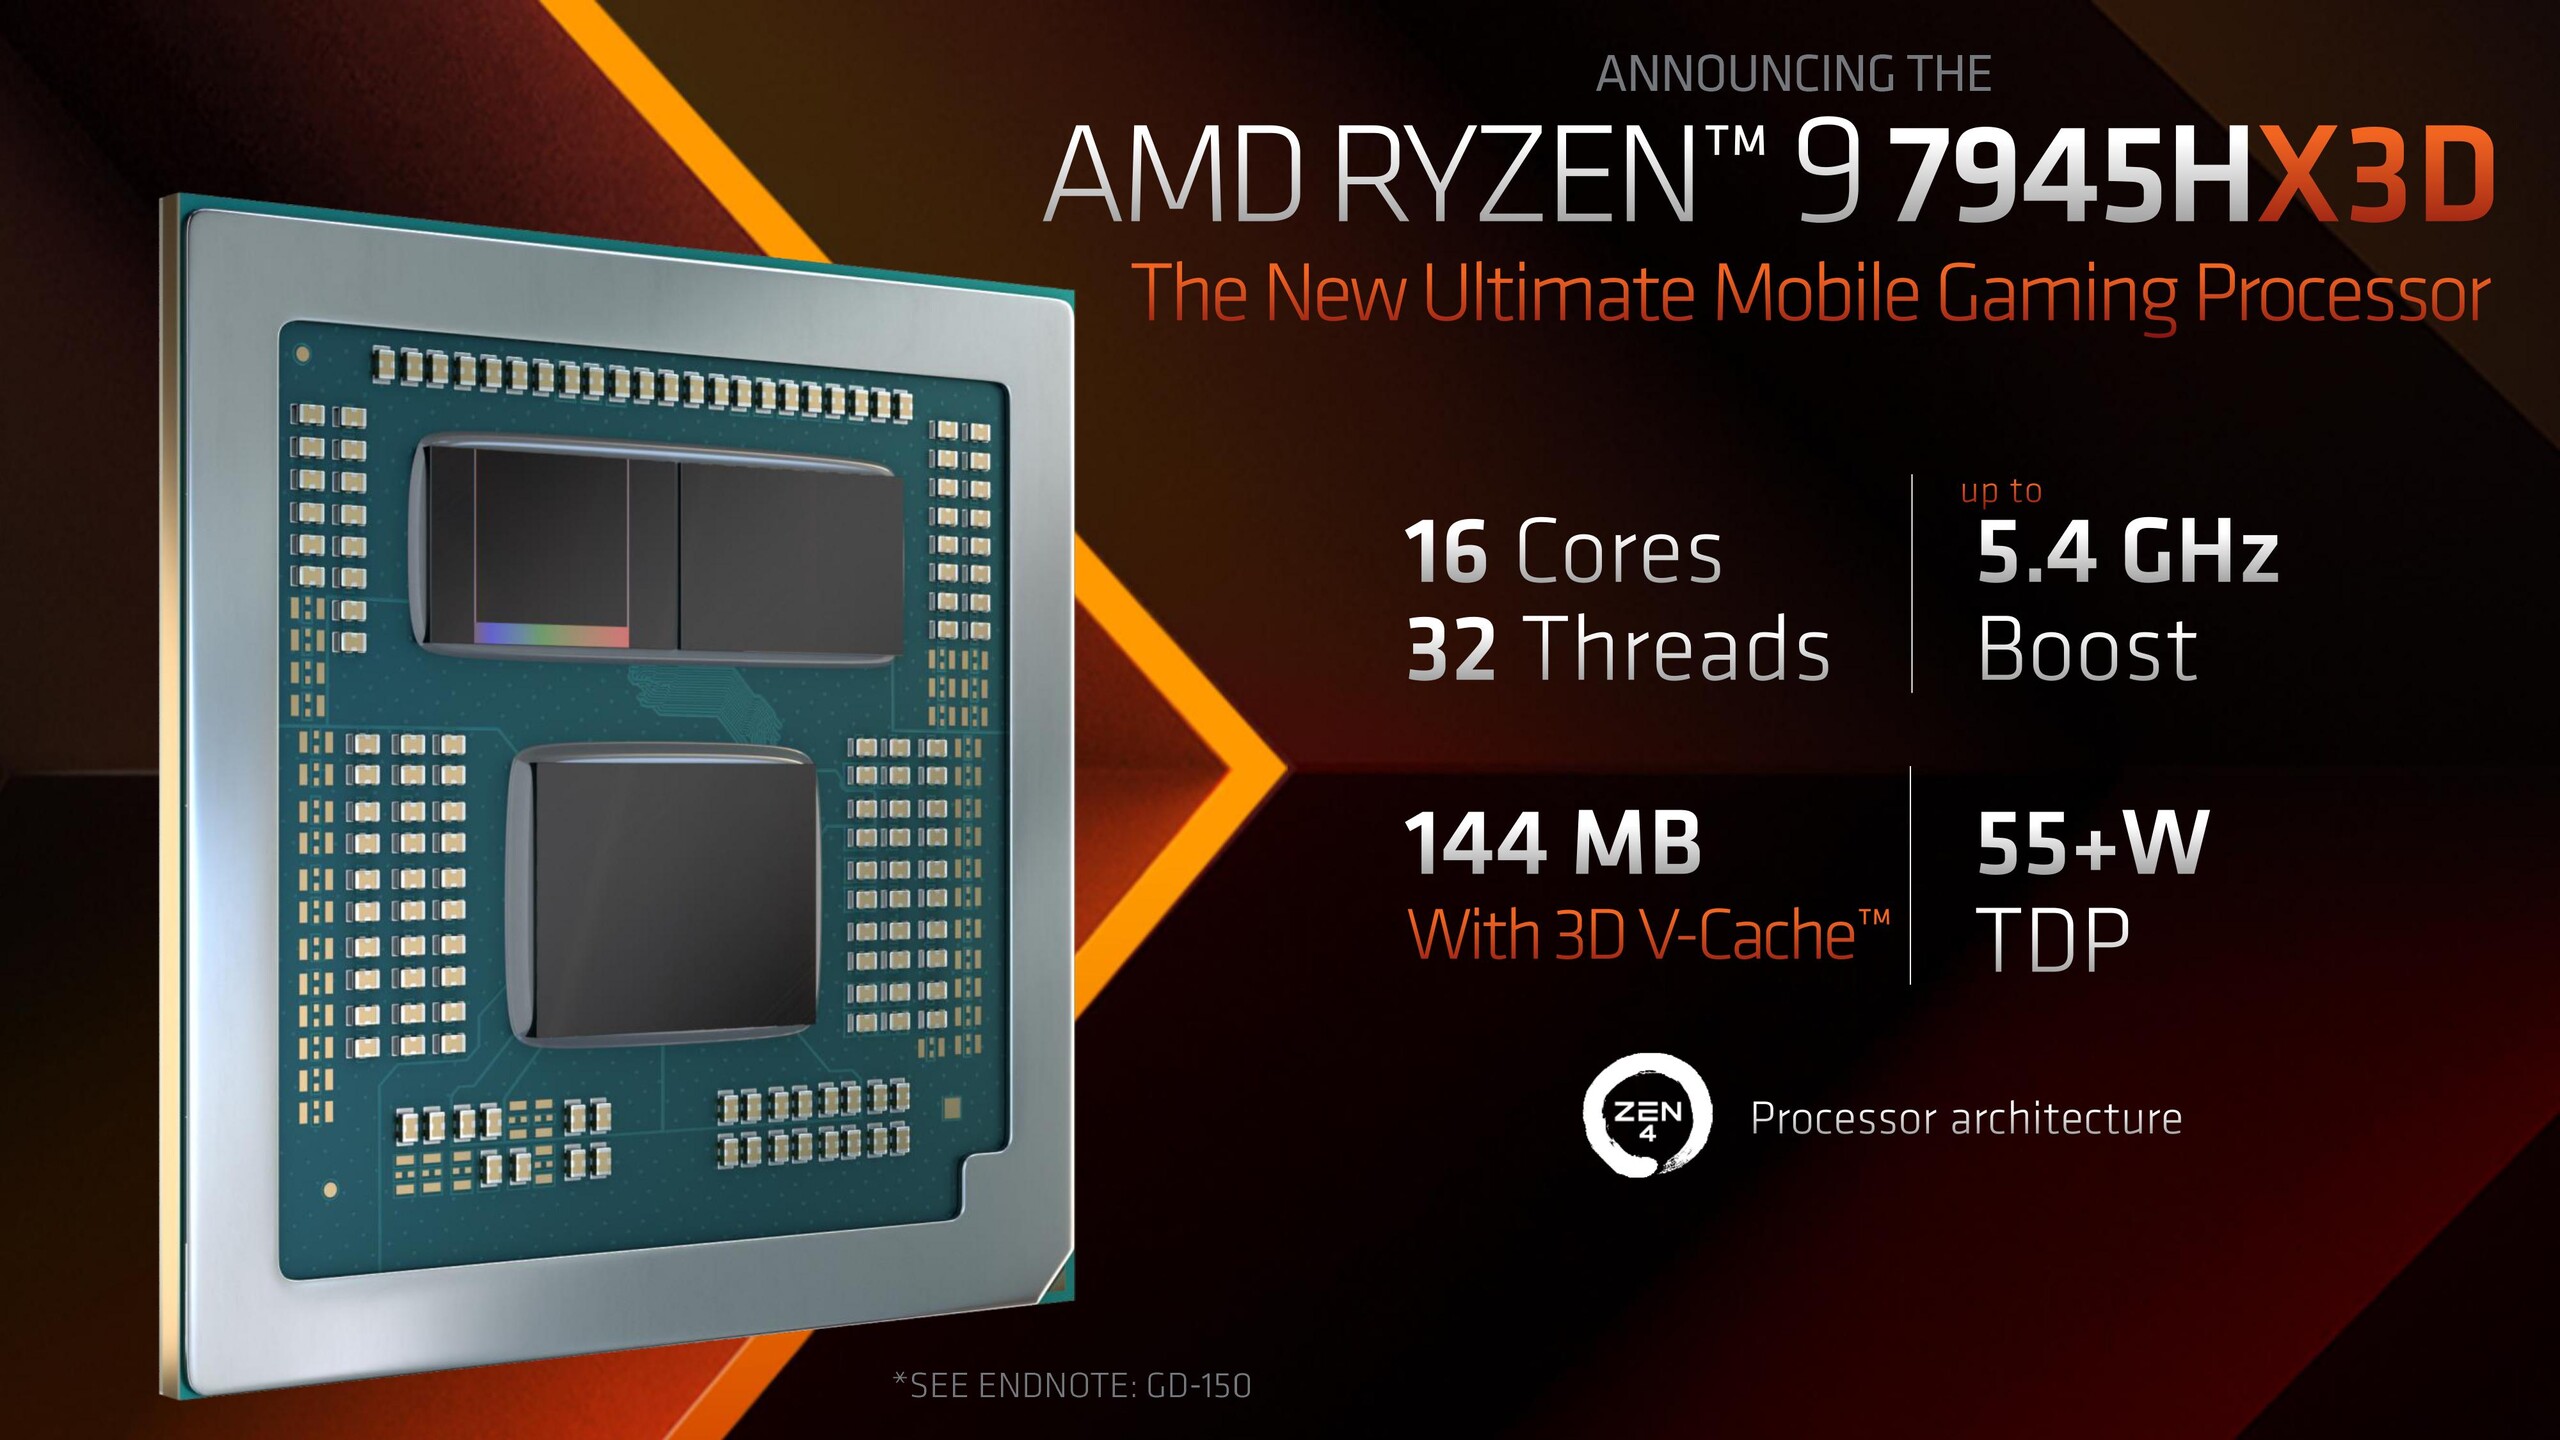 AMD Ryzen 9 7945HX3D è stato avvistato su Geekbench prima del lancio